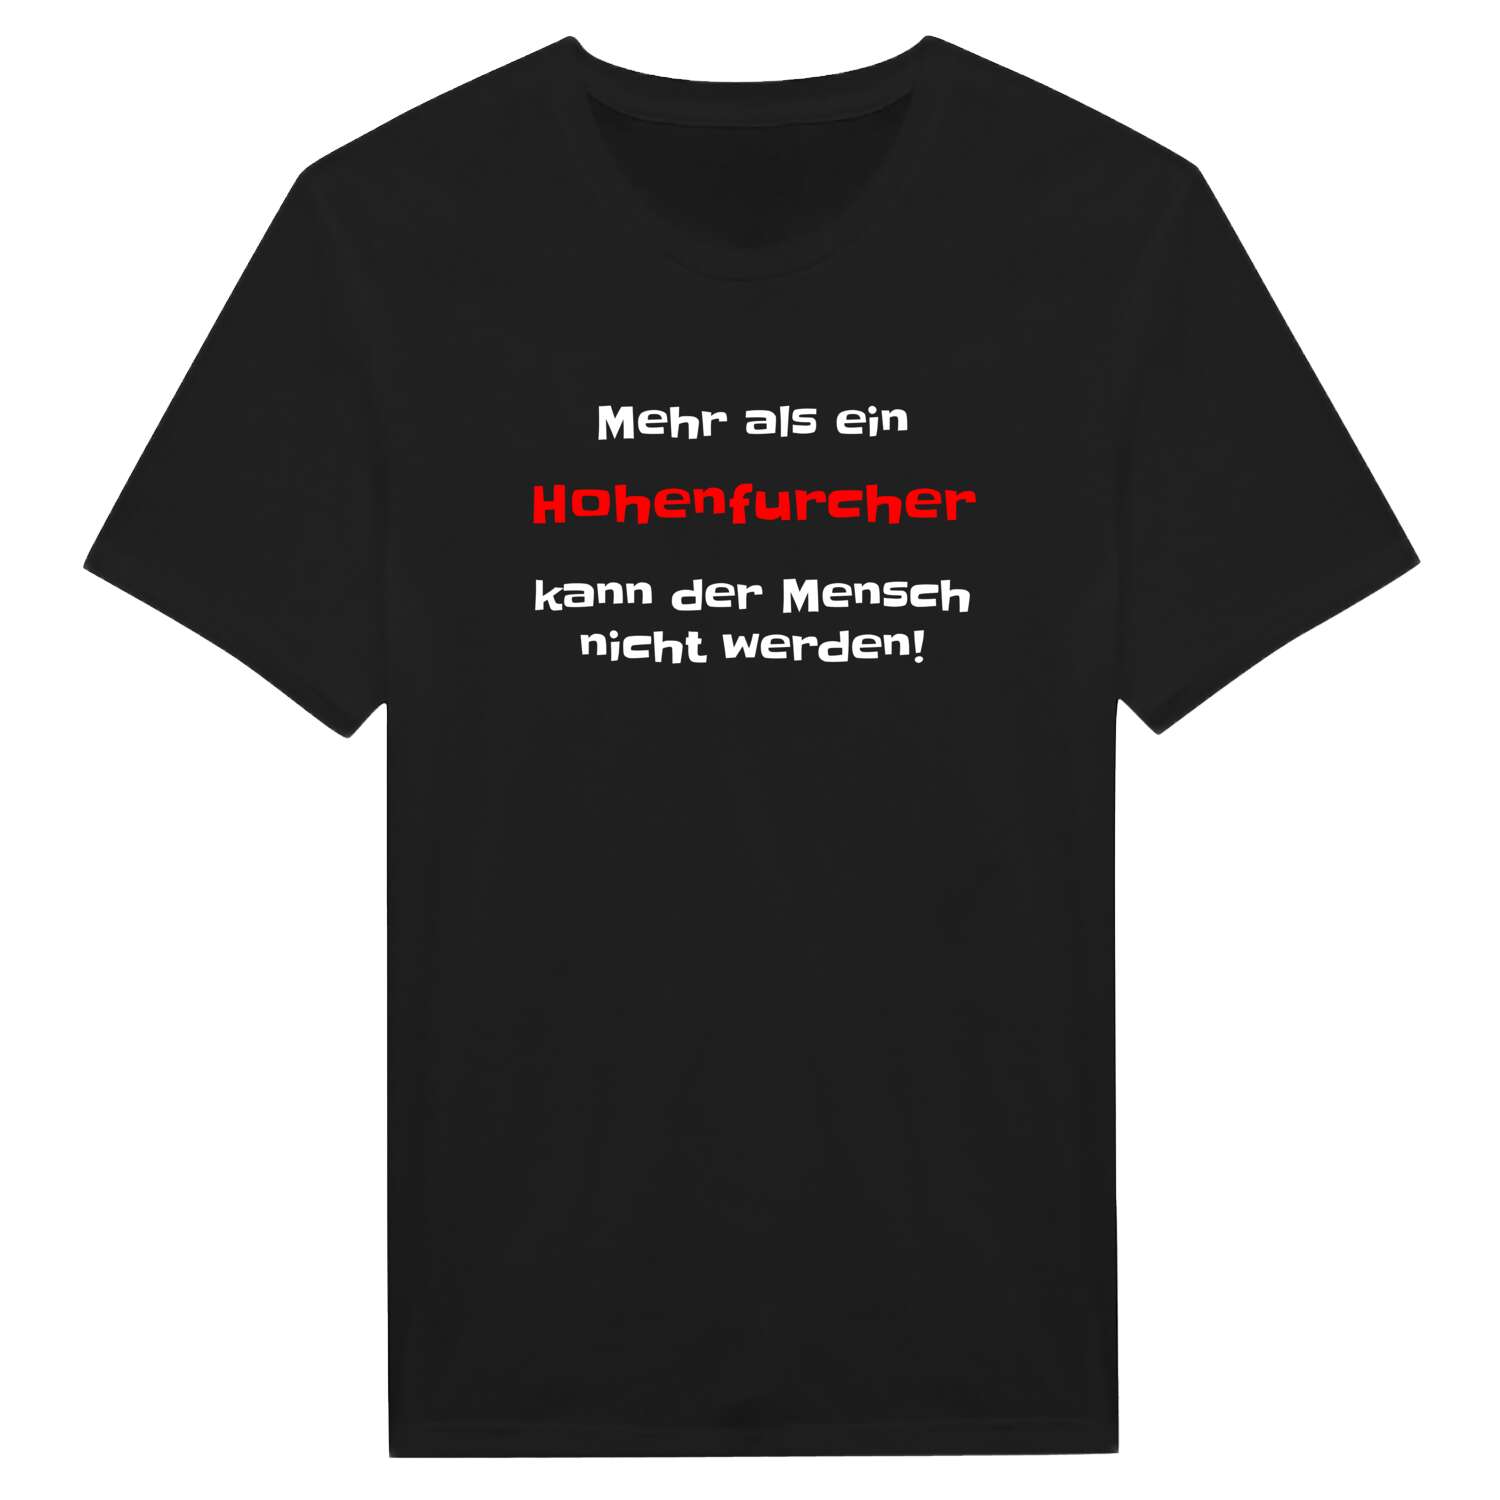 Hohenfurch T-Shirt »Mehr als ein«